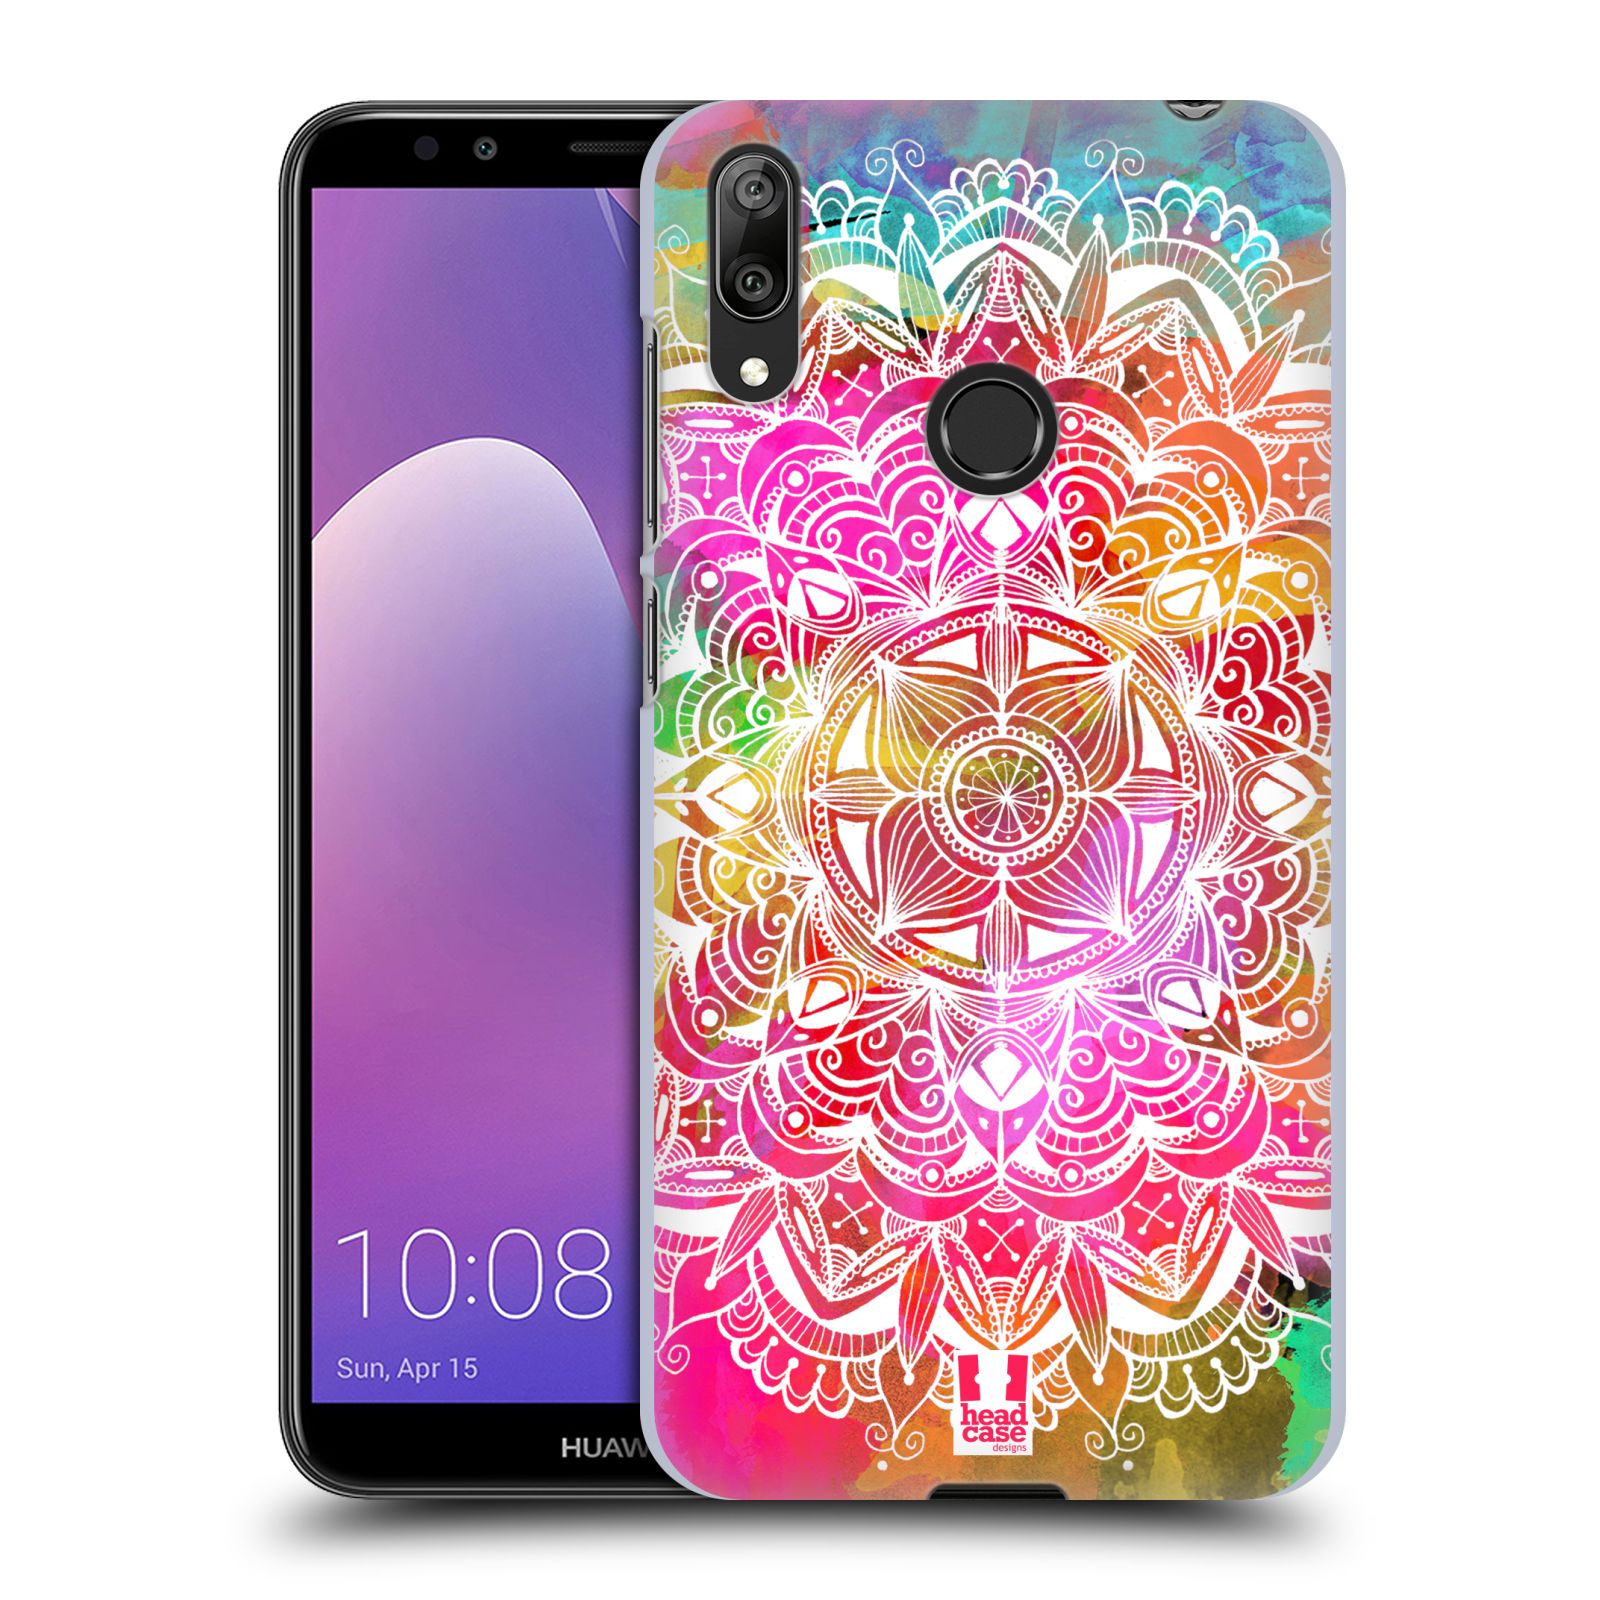 Plastové pouzdro na mobil Huawei Y7 (2019) - Head Case - Mandala Doodle Watercolour (Plastový kryt, pouzdro, obal na mobilní telefon Huawei Y7 2019 s motivem Mandala Doodle Watercolour)